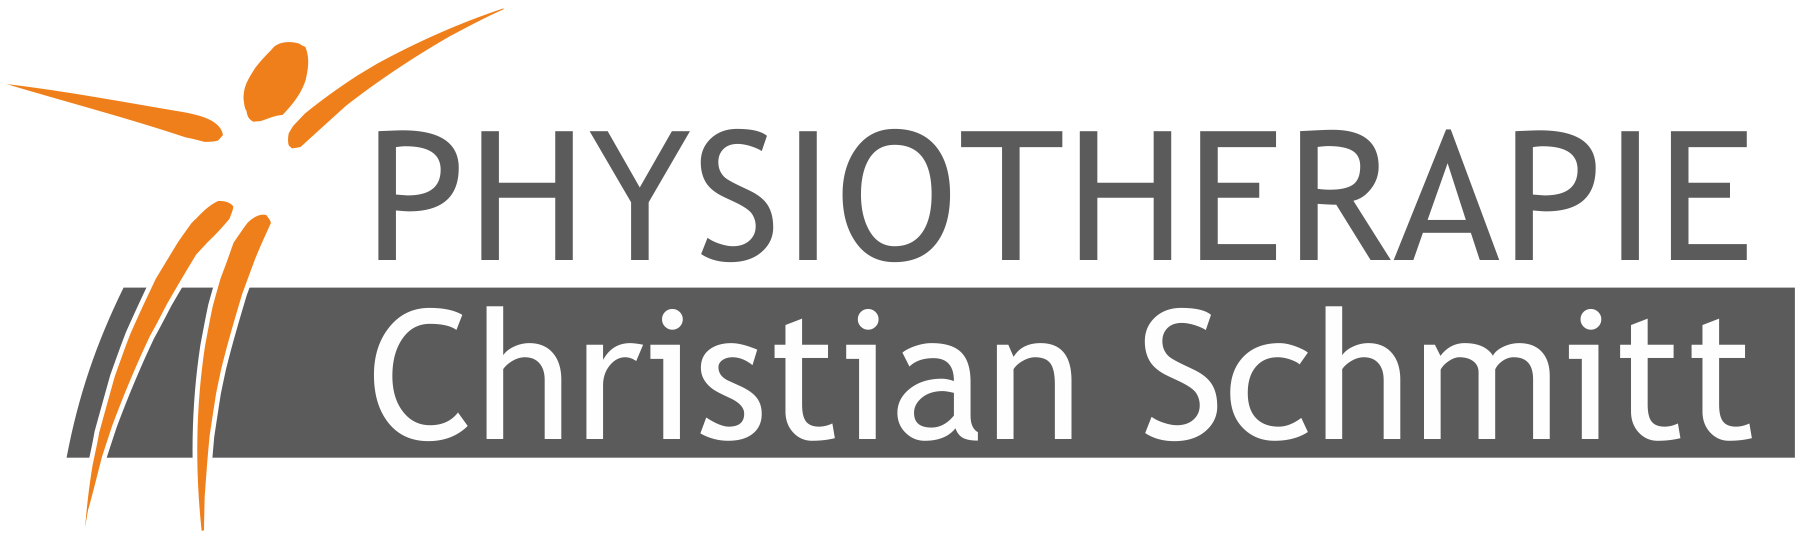 Physiotherapie Christian Schmitt